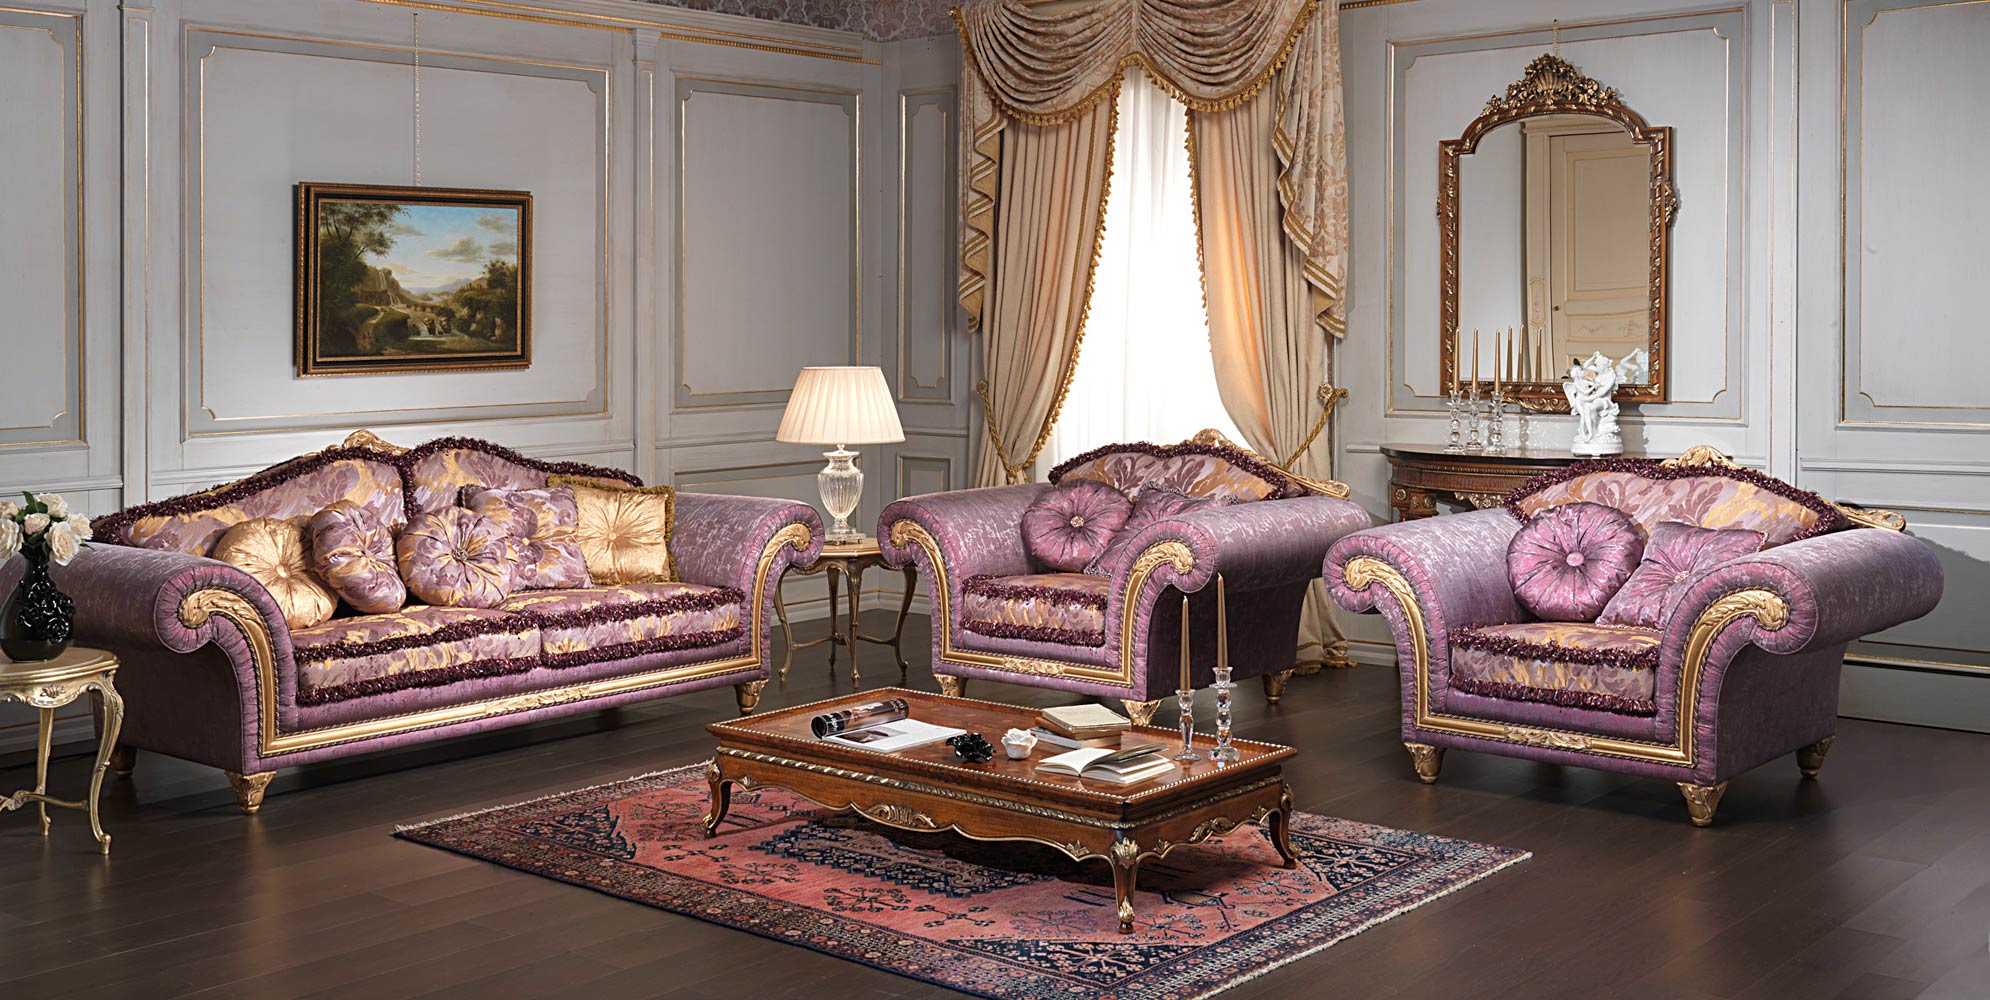 Salotto classico di lusso imperial vimercati meda for Interni classici di lusso